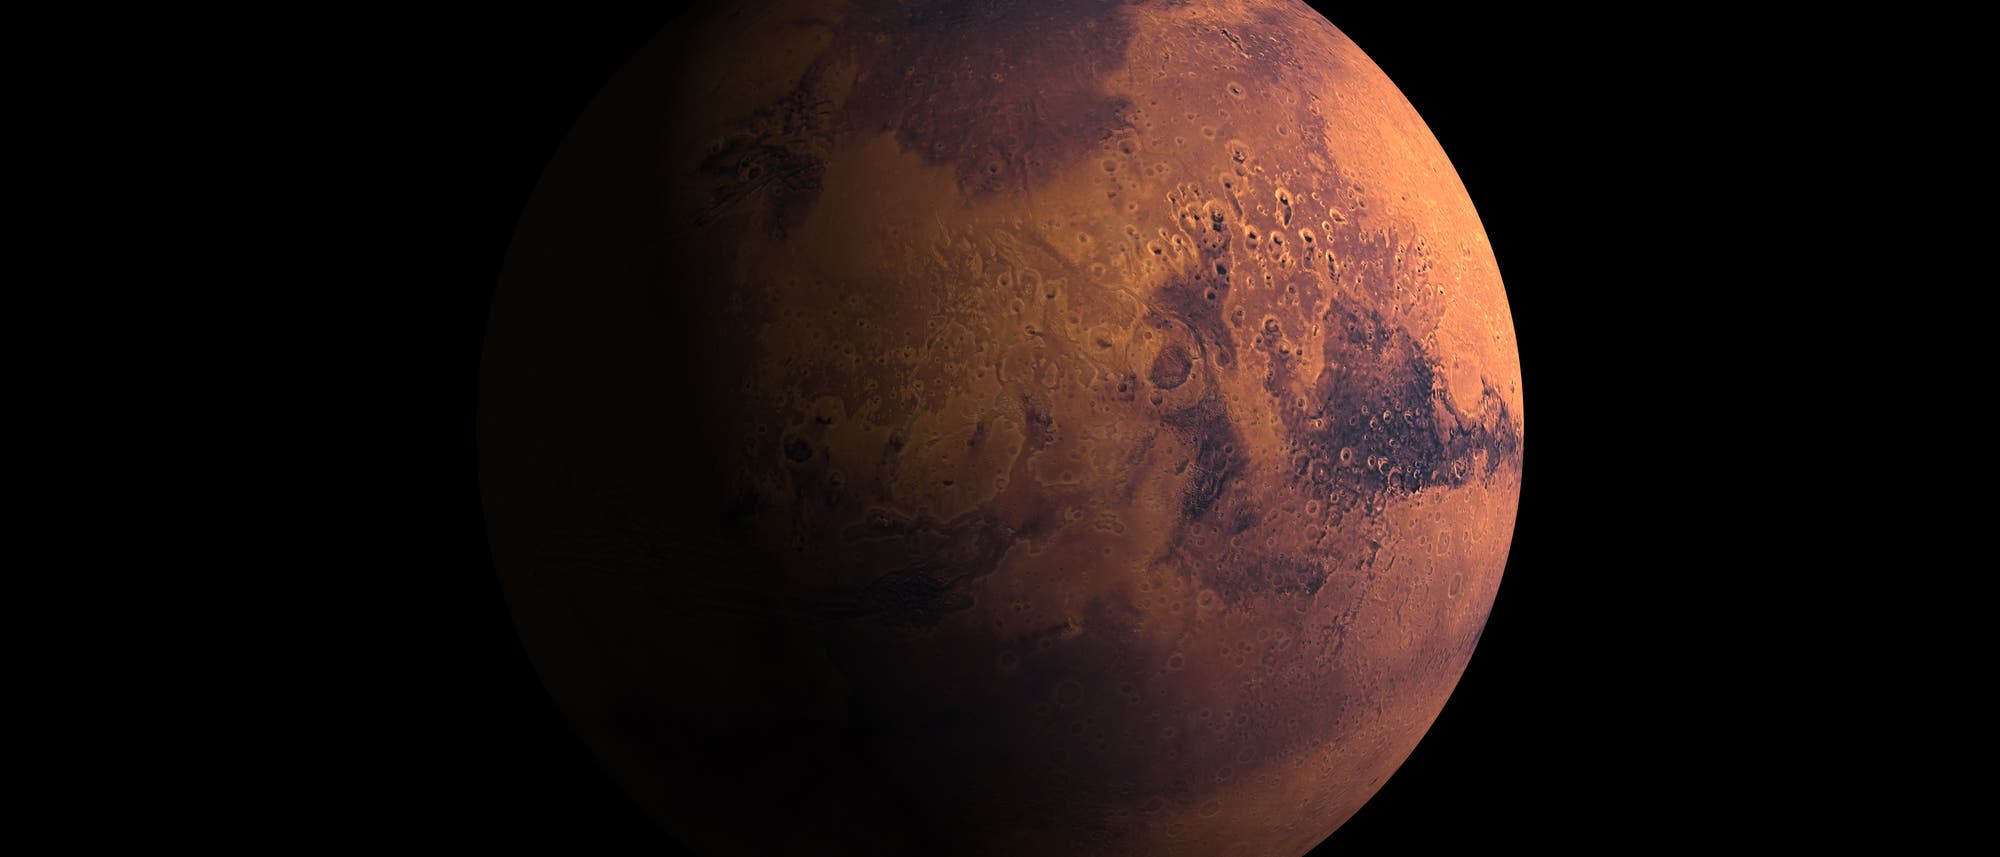 Der Planet Mars